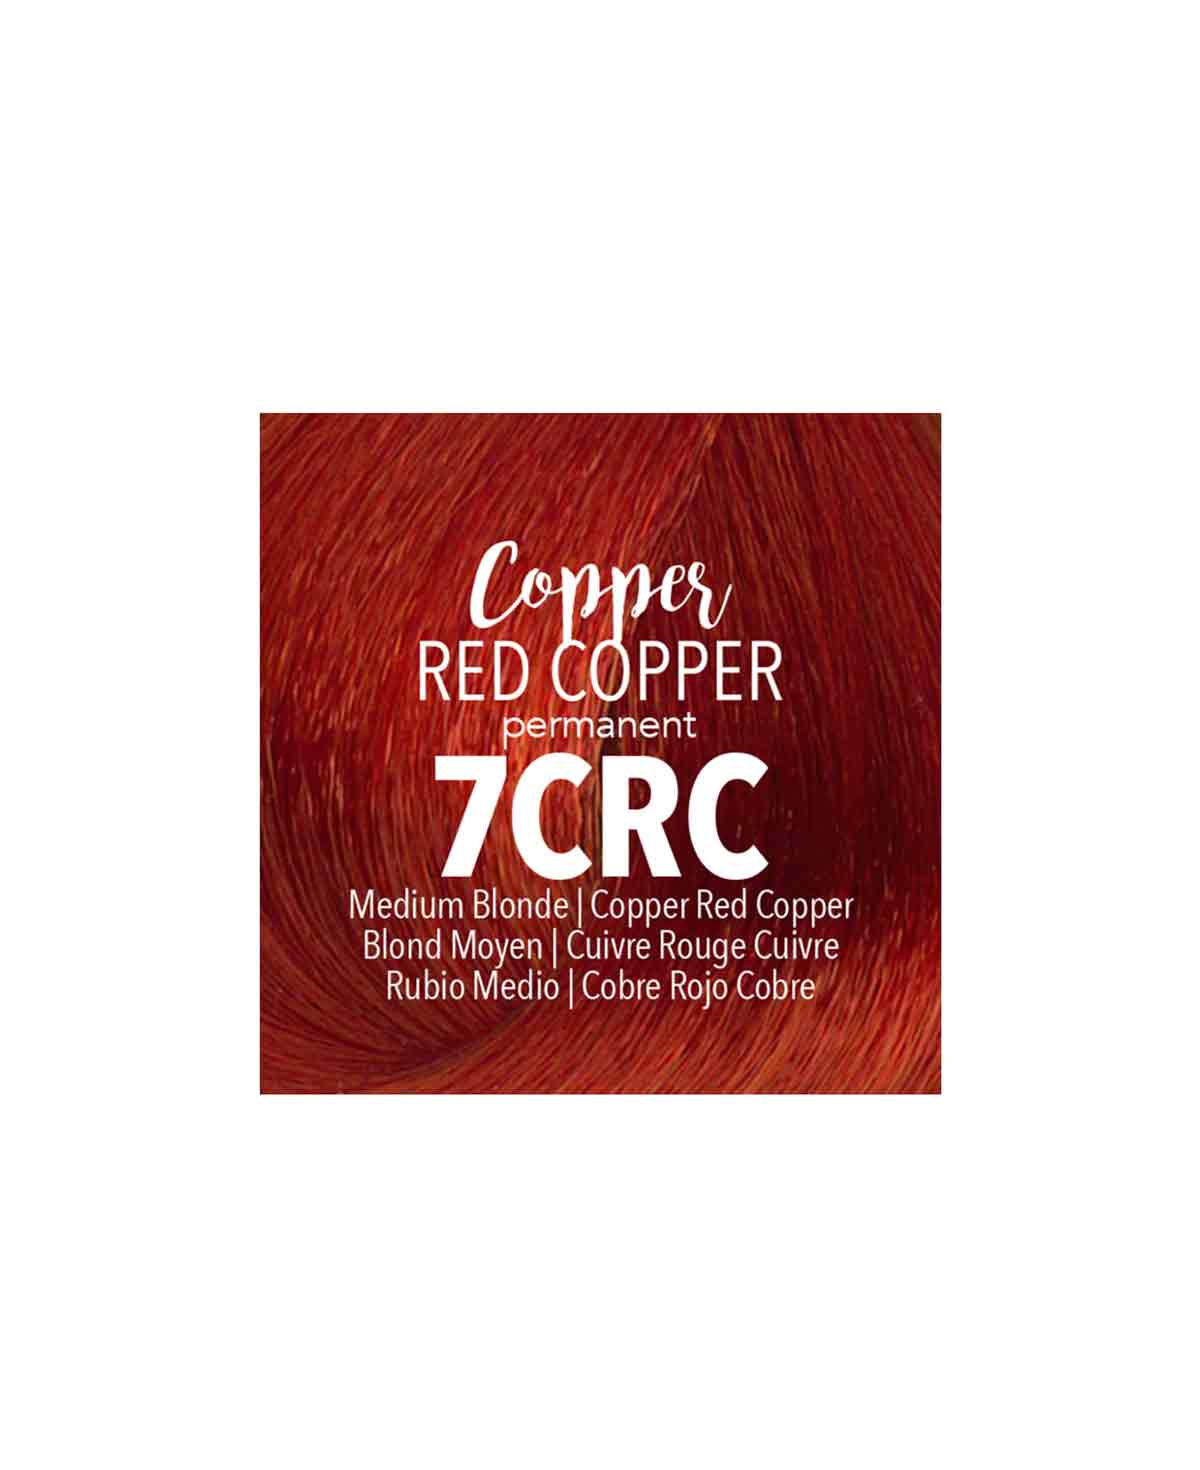 Mydentity - PERM. 7CRC Medium Blonde Copper Red Copper